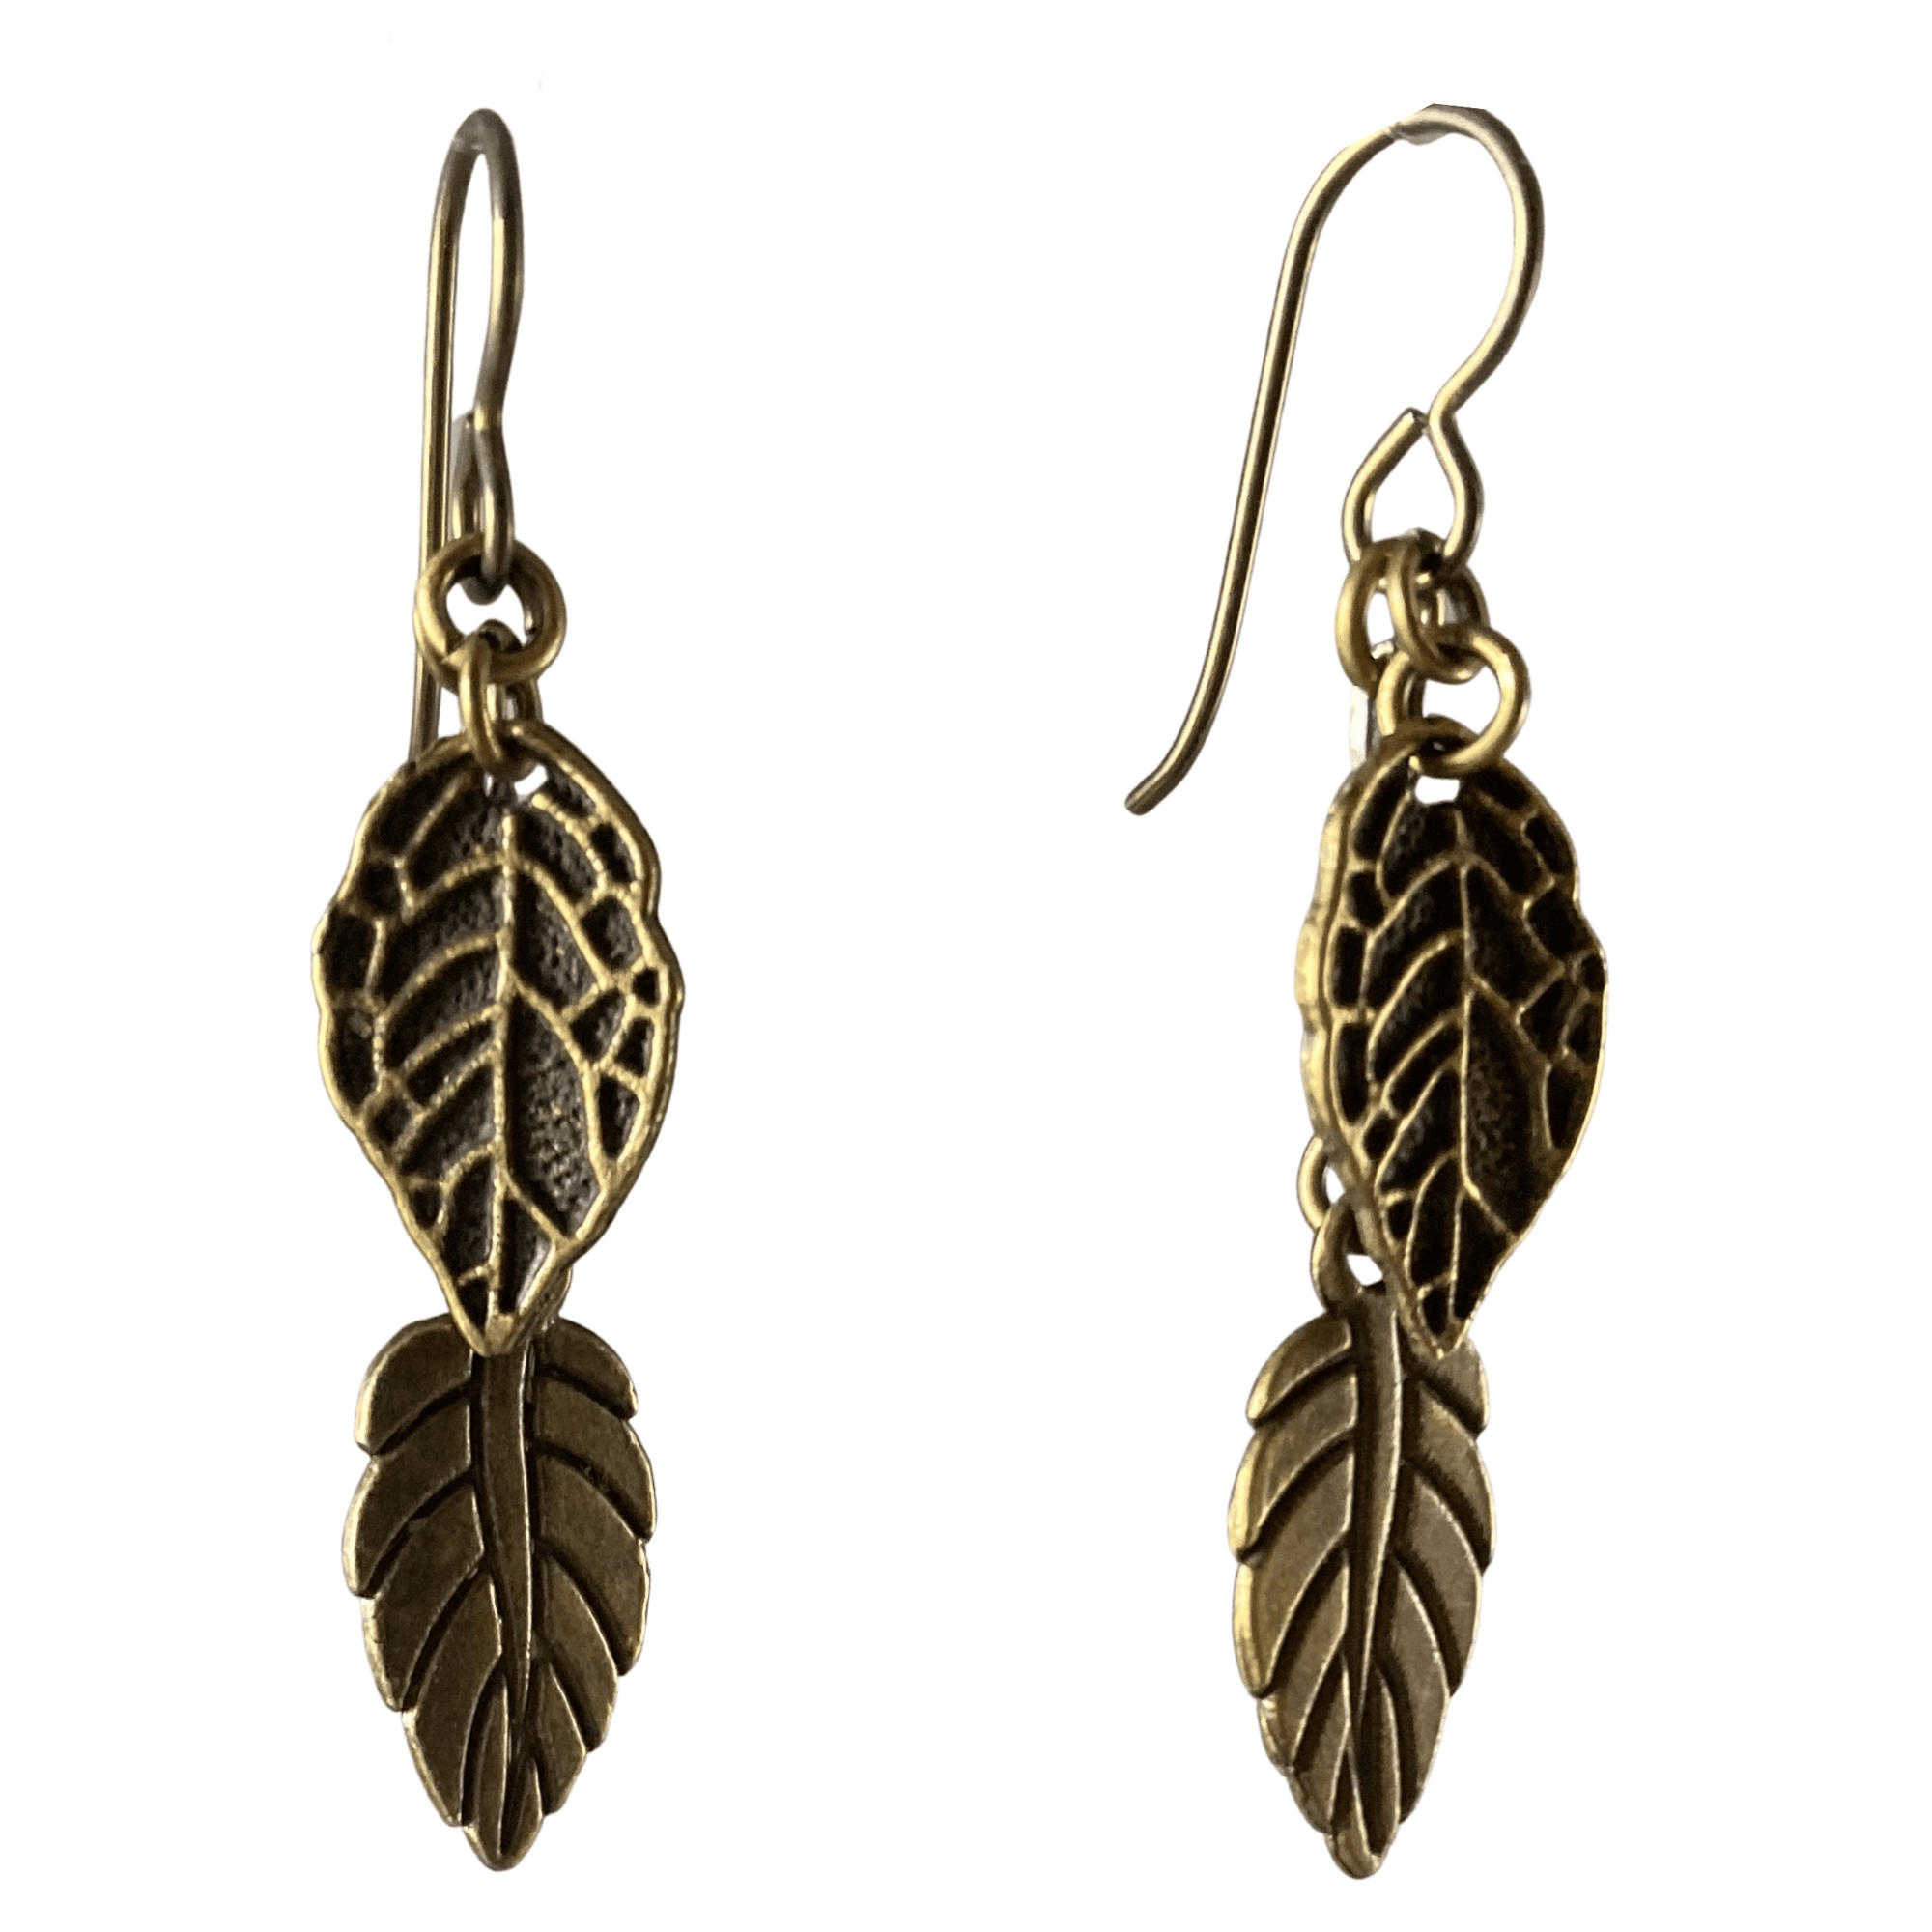 Antique Brass Leaf Dangle Earrings for Sensitive Ears-Earrings- Creative Jewelry by Marcia